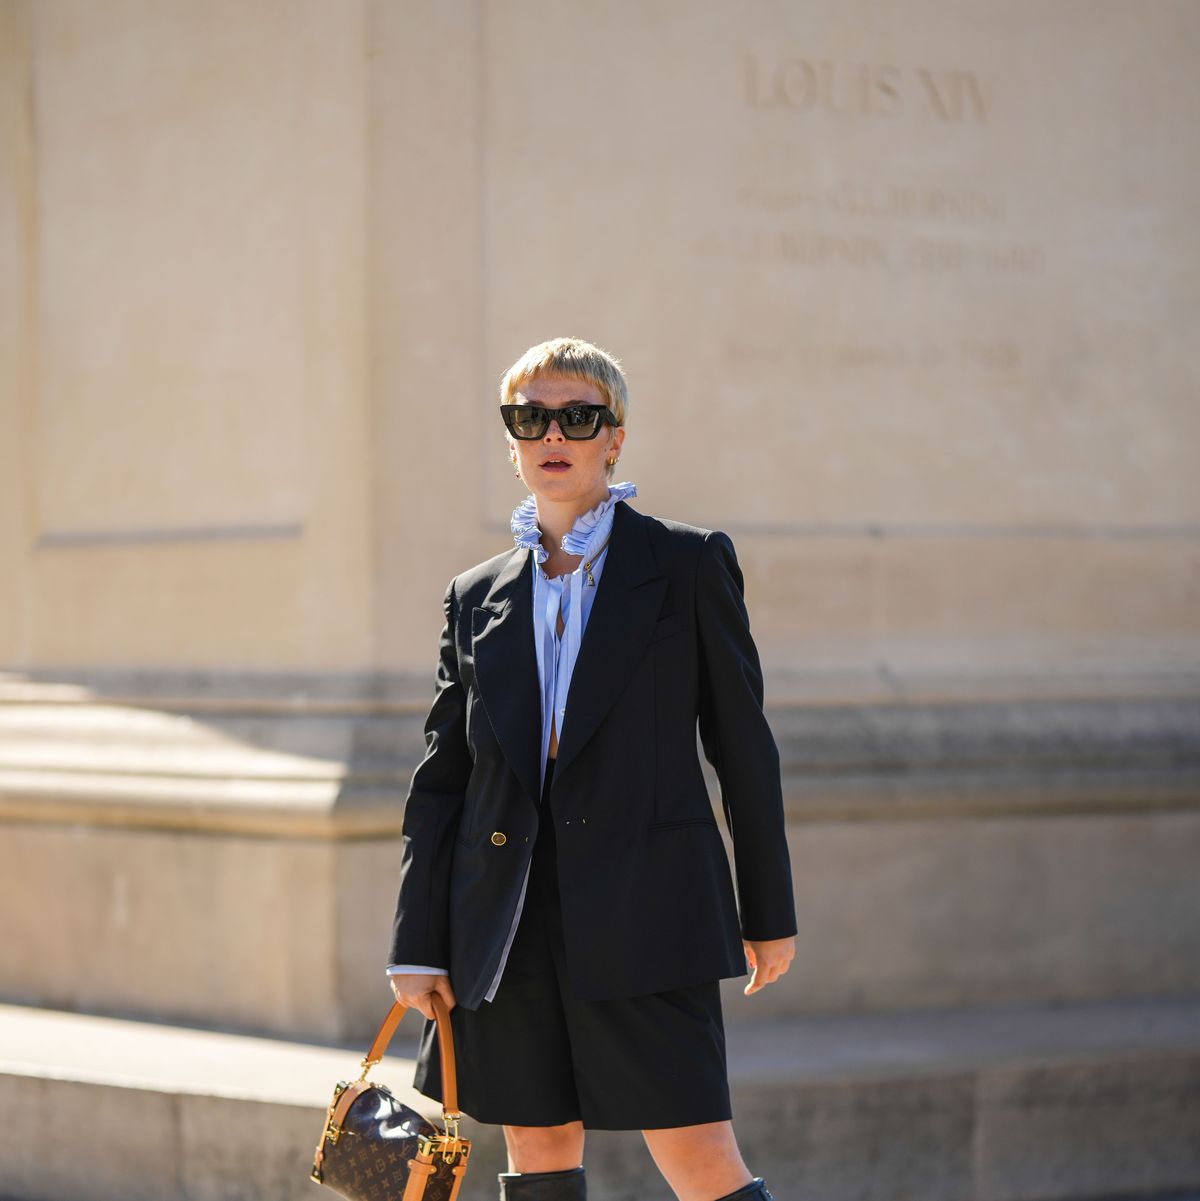 Los nuevos bolsos artísticos de Louis Vuitton que verás en todas